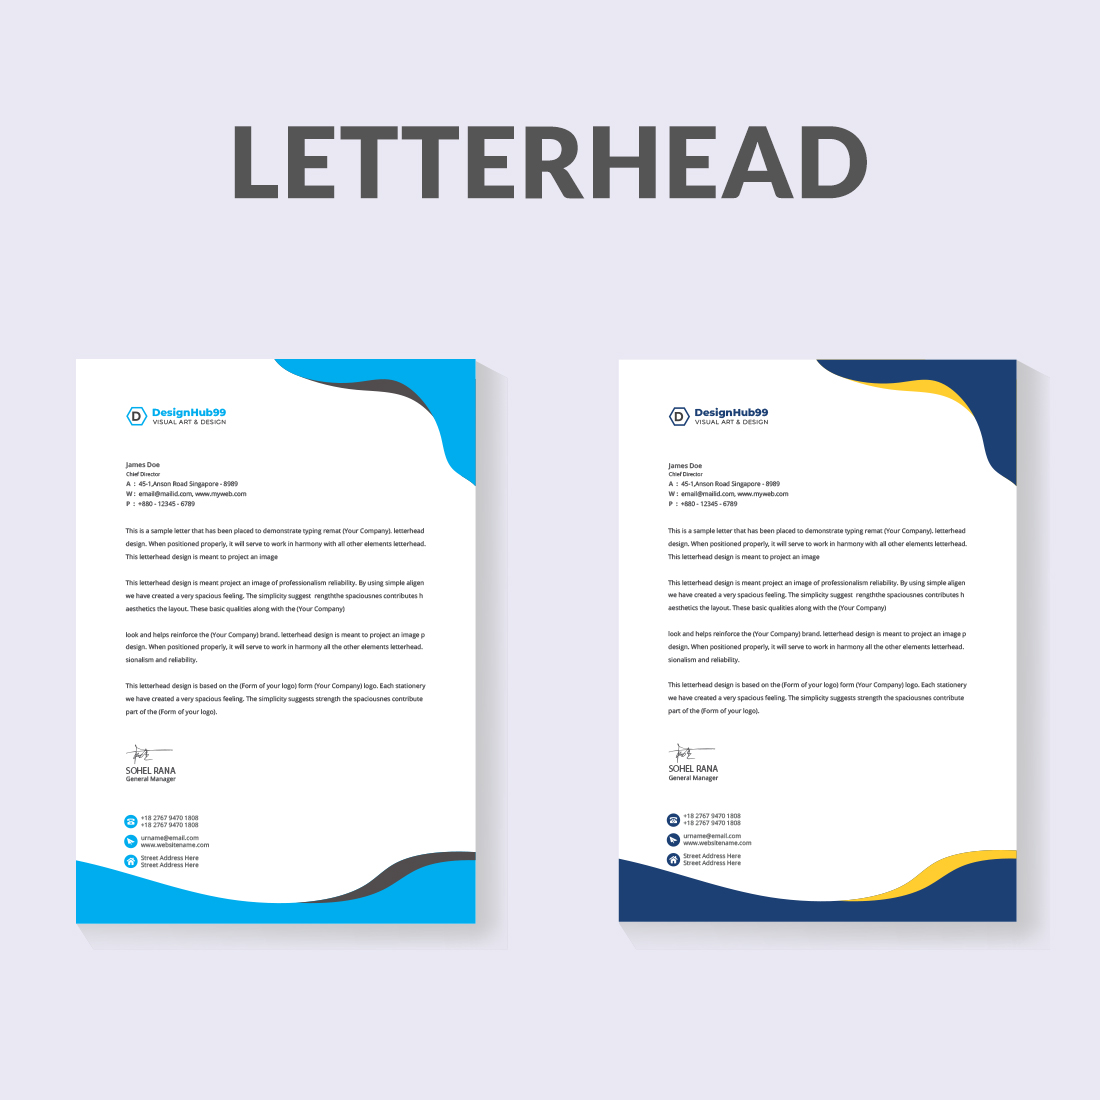 letterhead, business letterhead design preview image.